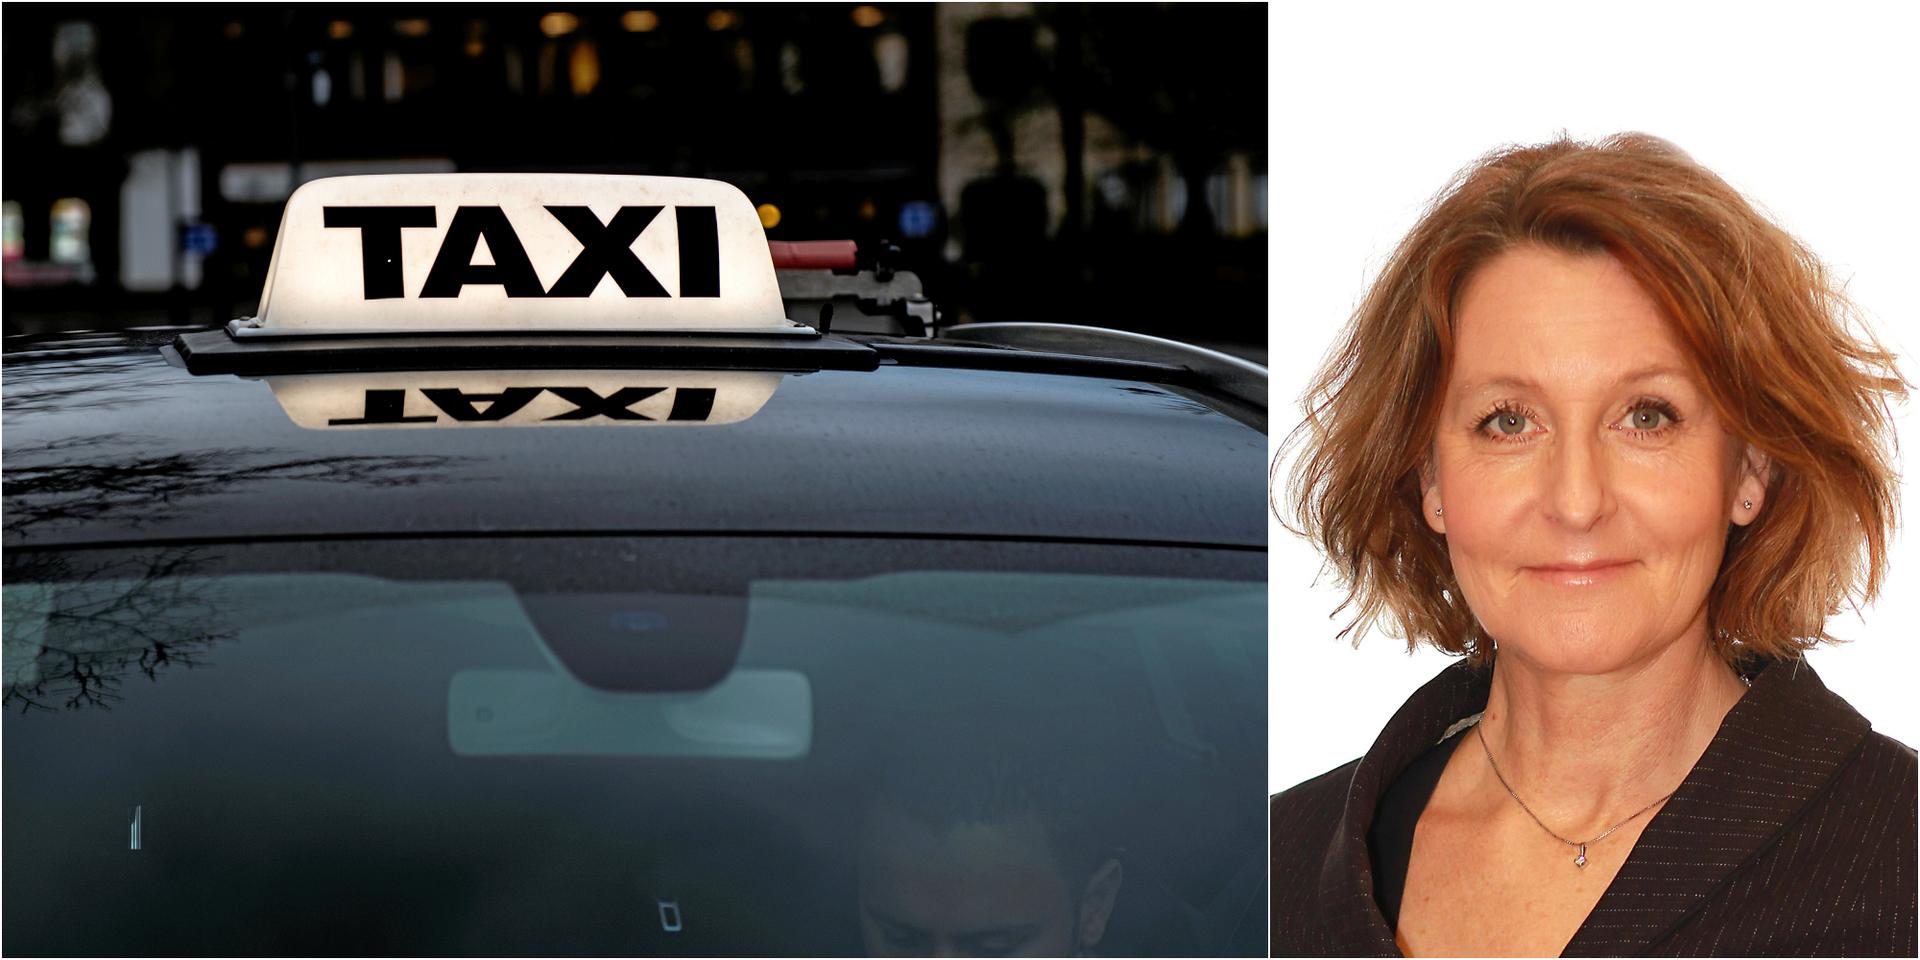 Lisa Iverstam minns en märklig taxiresa en sen 90-talsnatt.